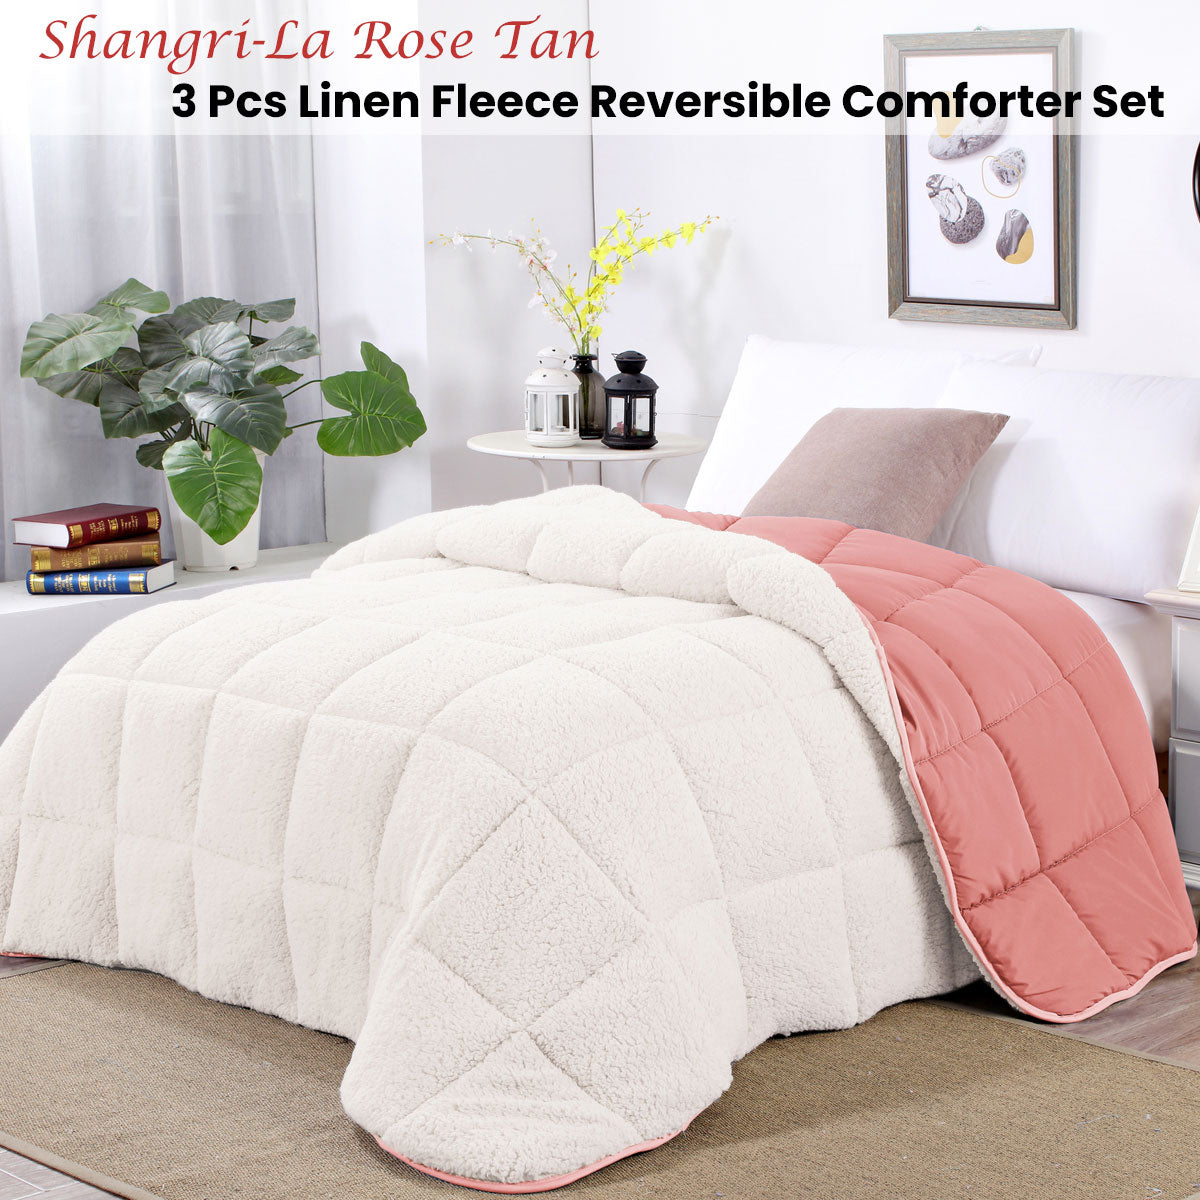 King Shangri La Rose Tan Sherpa Fleece Reversible 3 Pcs Comforter Set - White/Pink